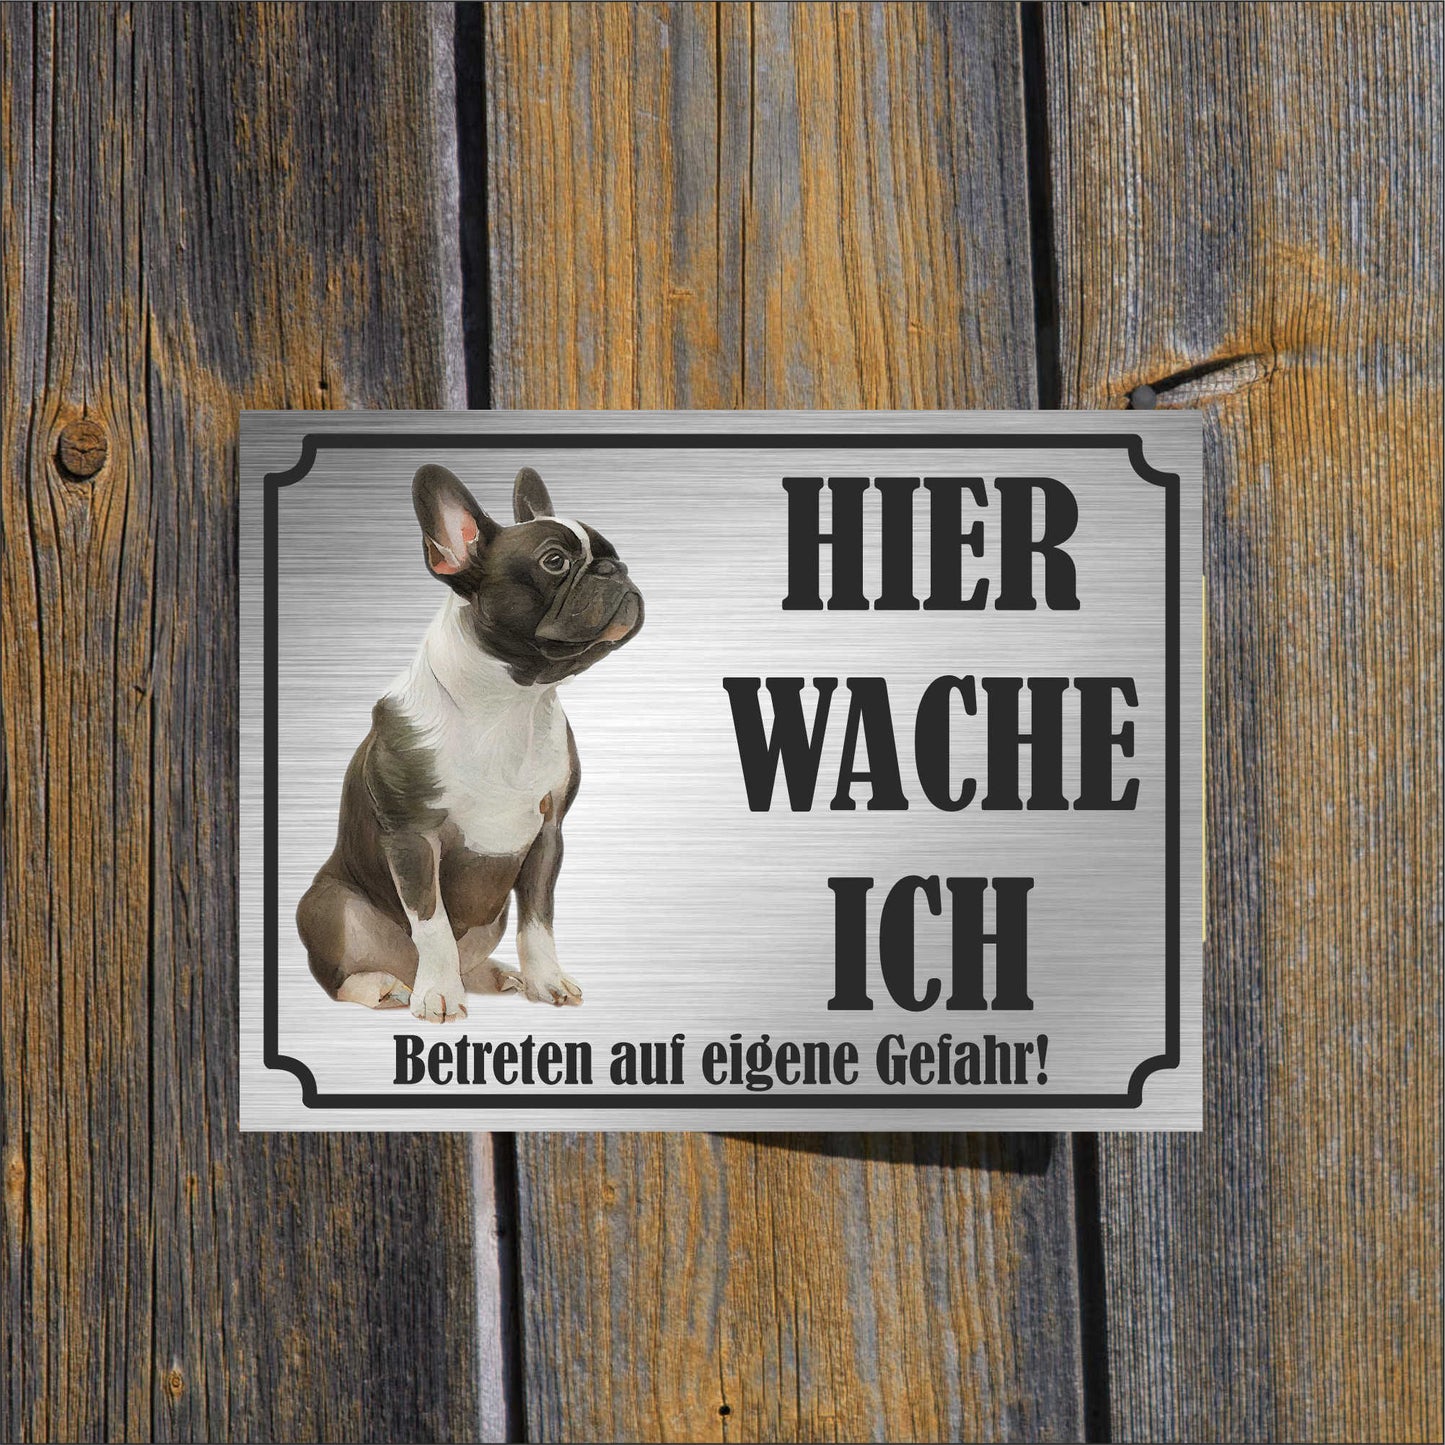 Französische Bulldogge - Schild bedruckt - Hier wache ich - Aluverbundplatte Edelstahl Look